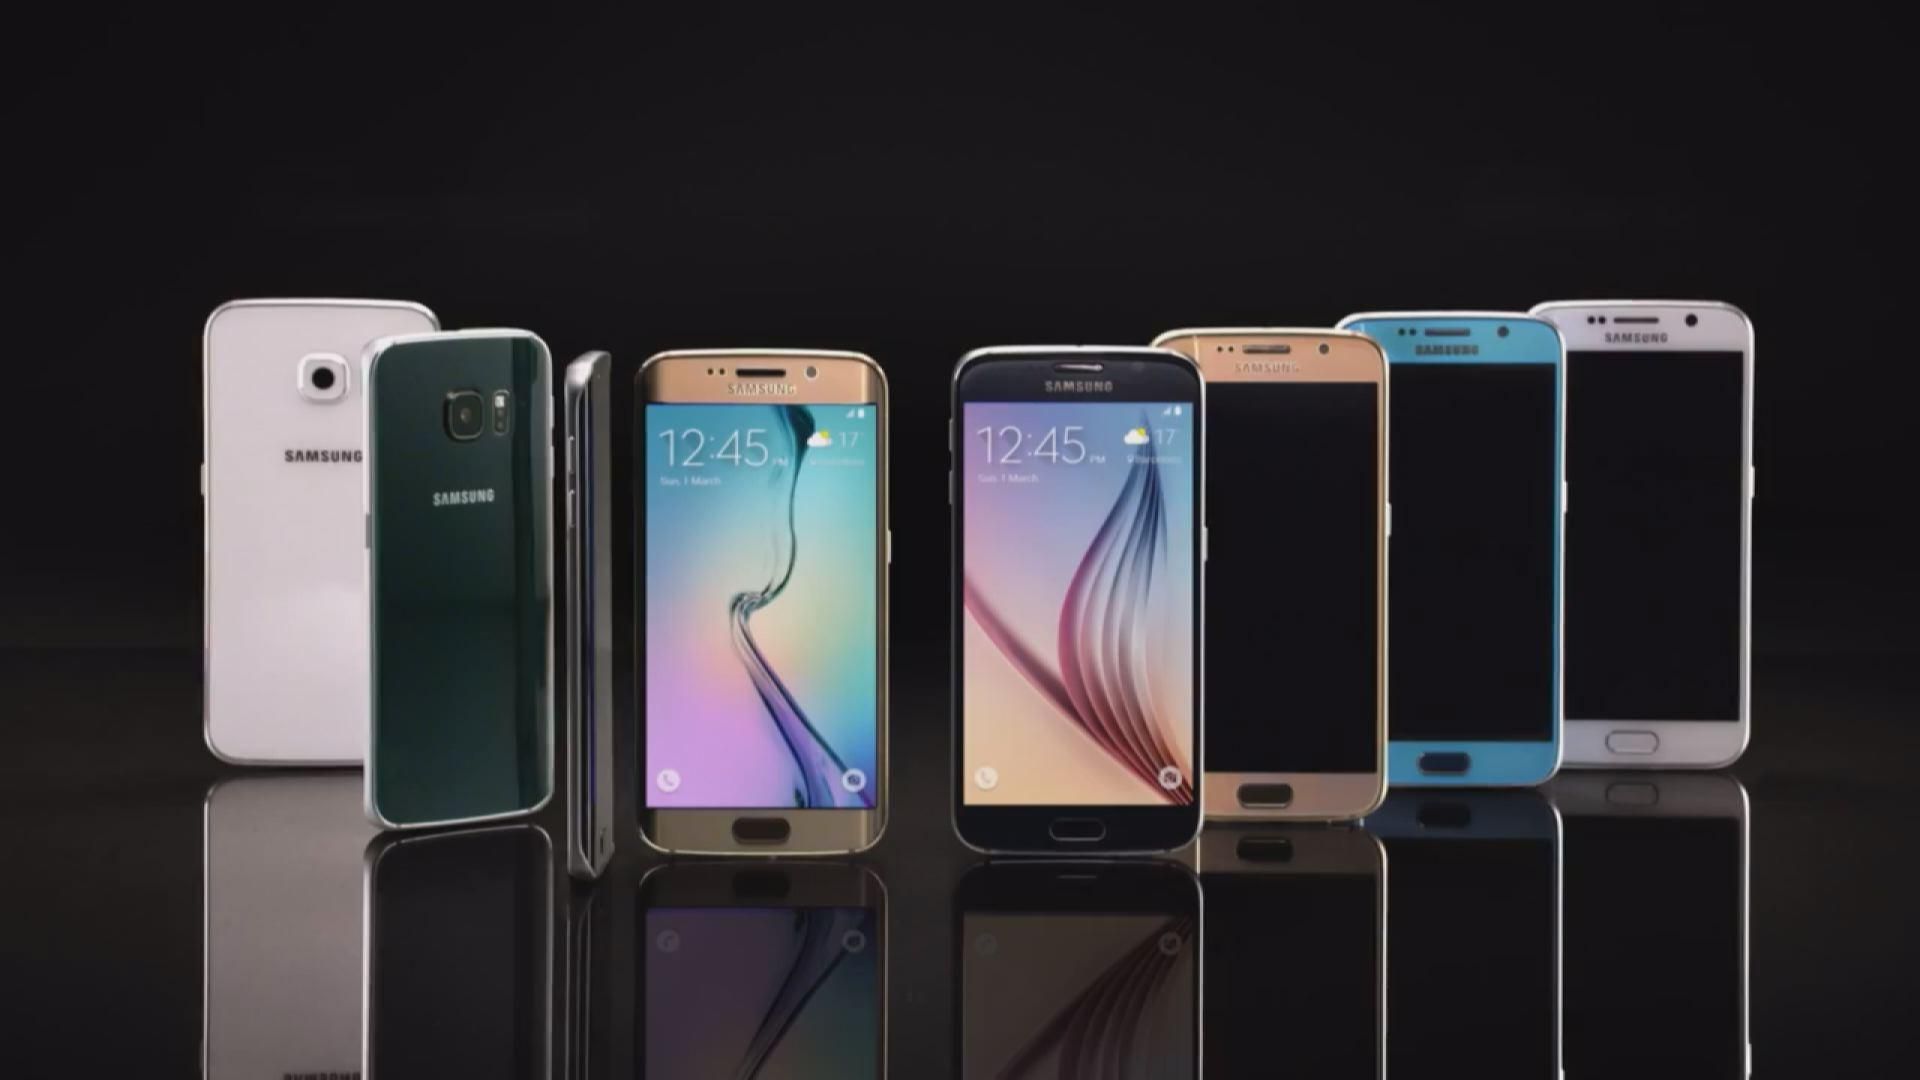 Інновації: відомі ціни на Samsung Galaxy S6 і Galaxy S6 Edge, винайдено контейнер для лінивих